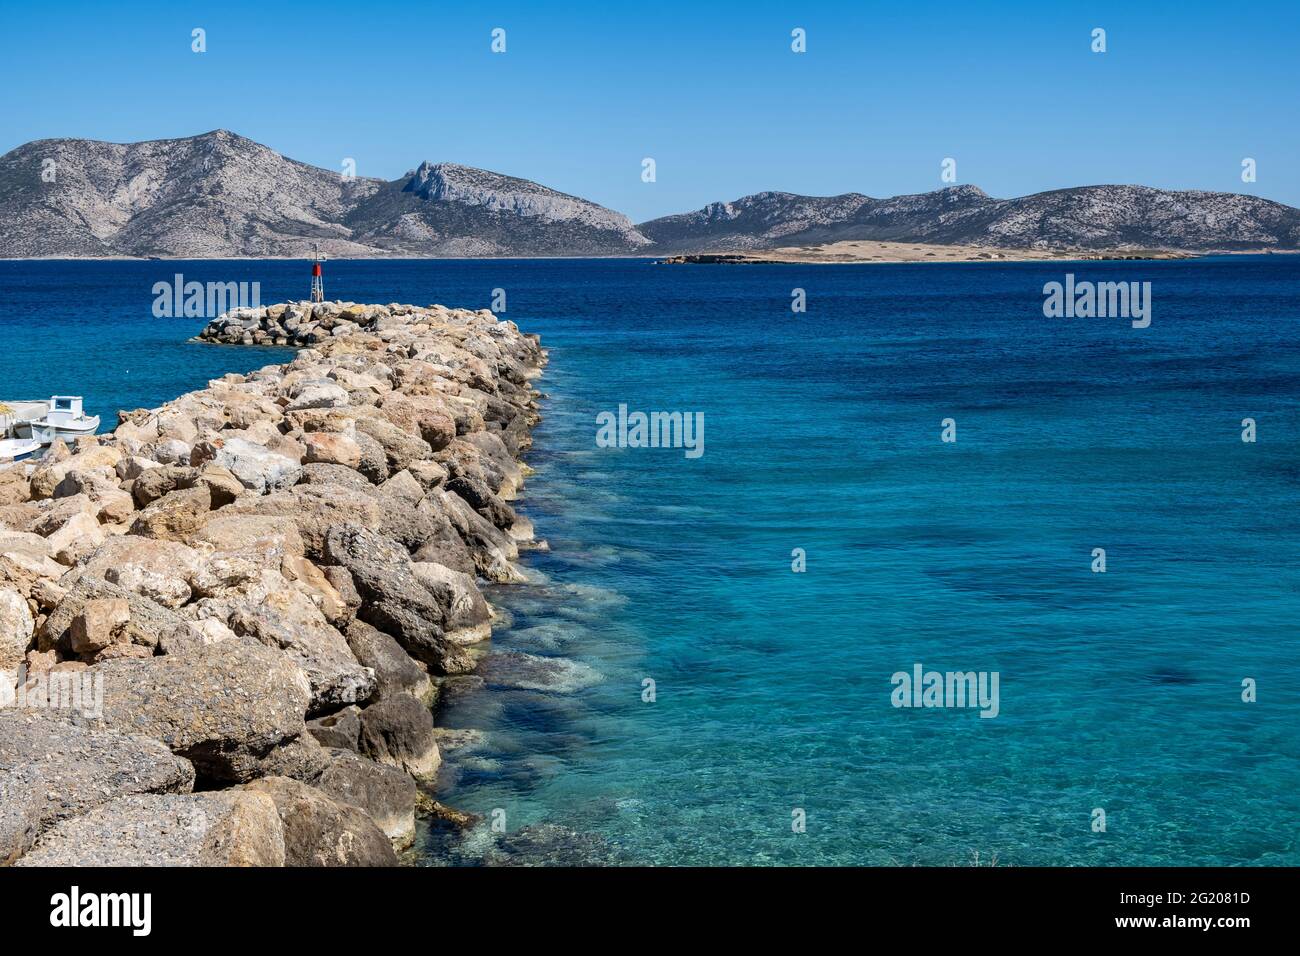 Vue sur le petit-déjeuner et la balise aérienne de drone. Île de Koufonisi port de plaisance mur de protection rocailleux, petits Cyclades Grèce. Mer rippée et ciel bleu clair Banque D'Images